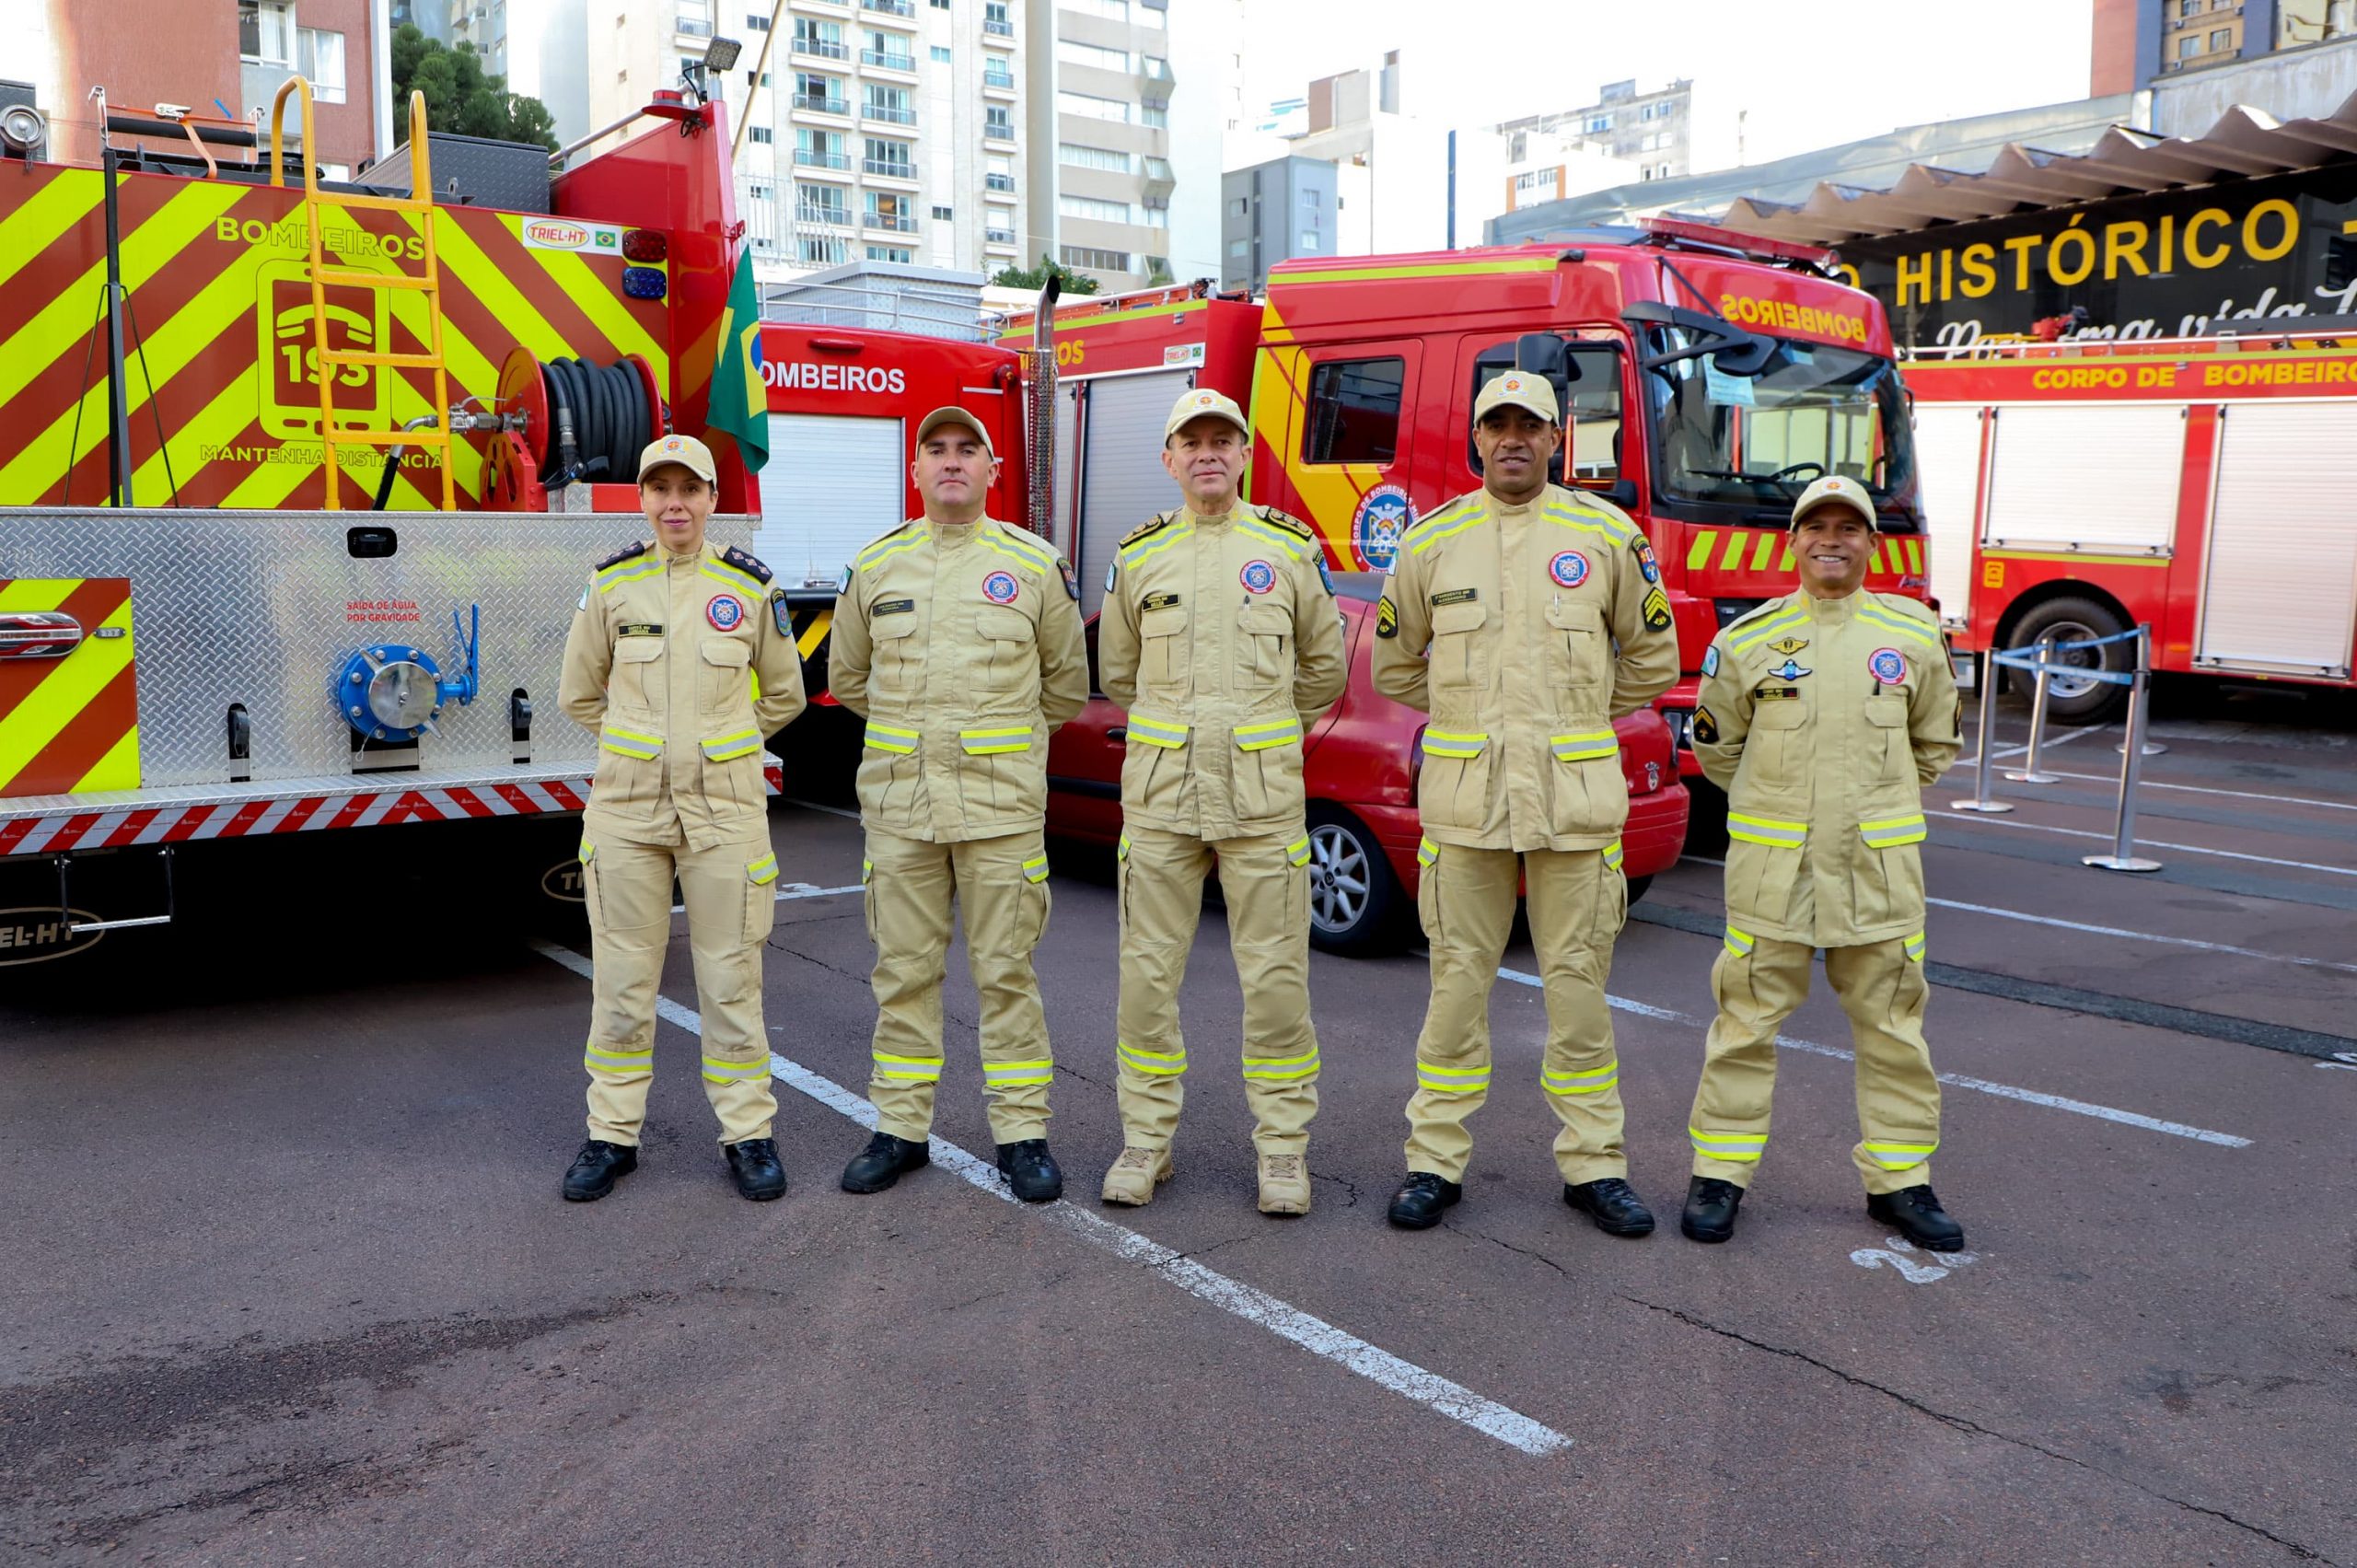 Imagem mostra cinco bombeiros que auxiliaram no resgate das vítimas do rio grande do sul